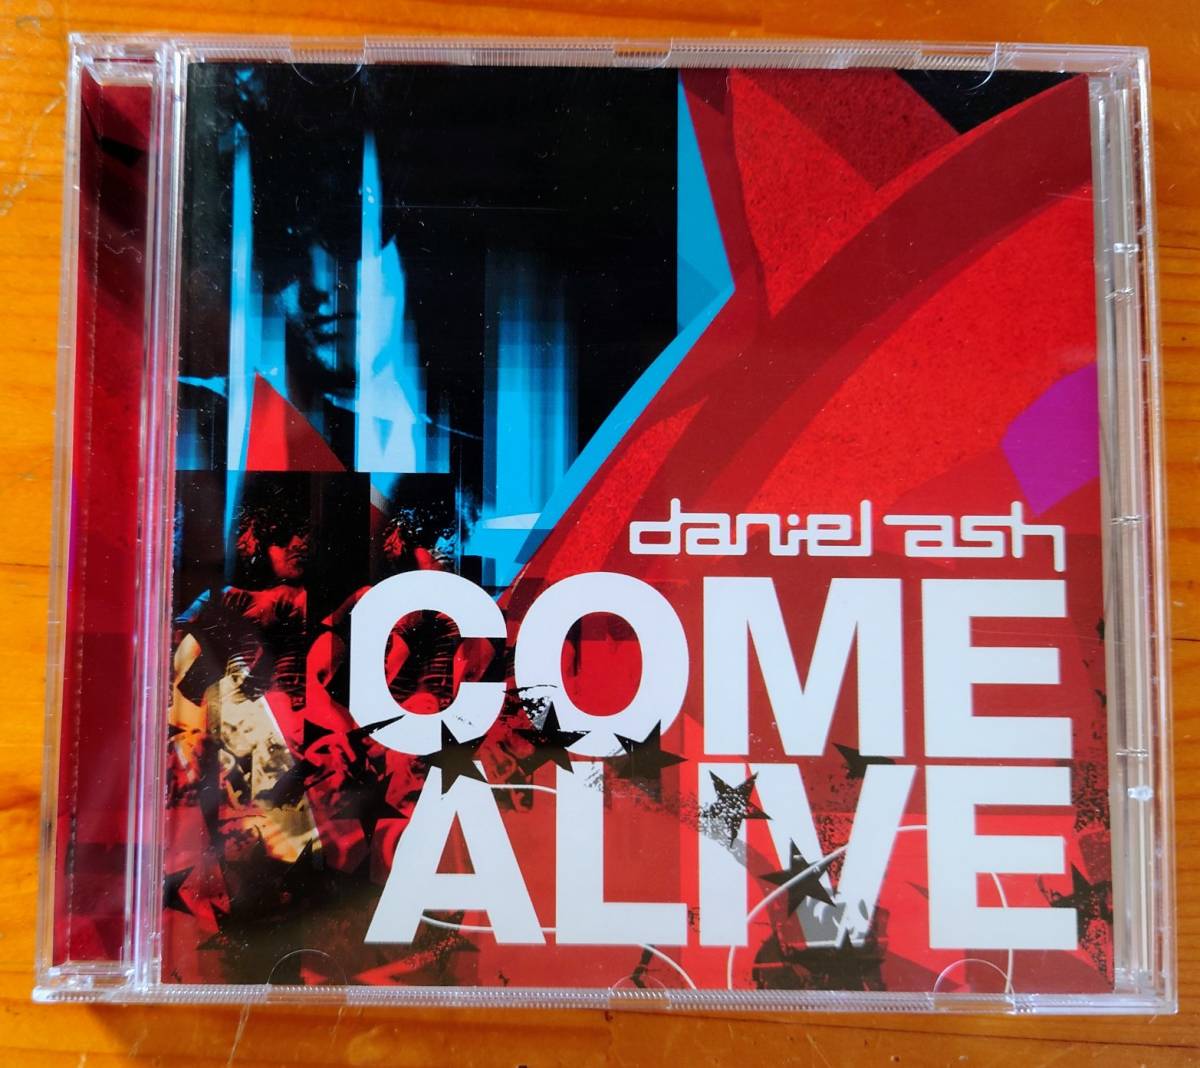 Daniel Ash ダニエル・アッシュ/Come Alive/バウハウス Bauhaus/Love And Rockets ラヴ・アンド・ロケッツ_画像1